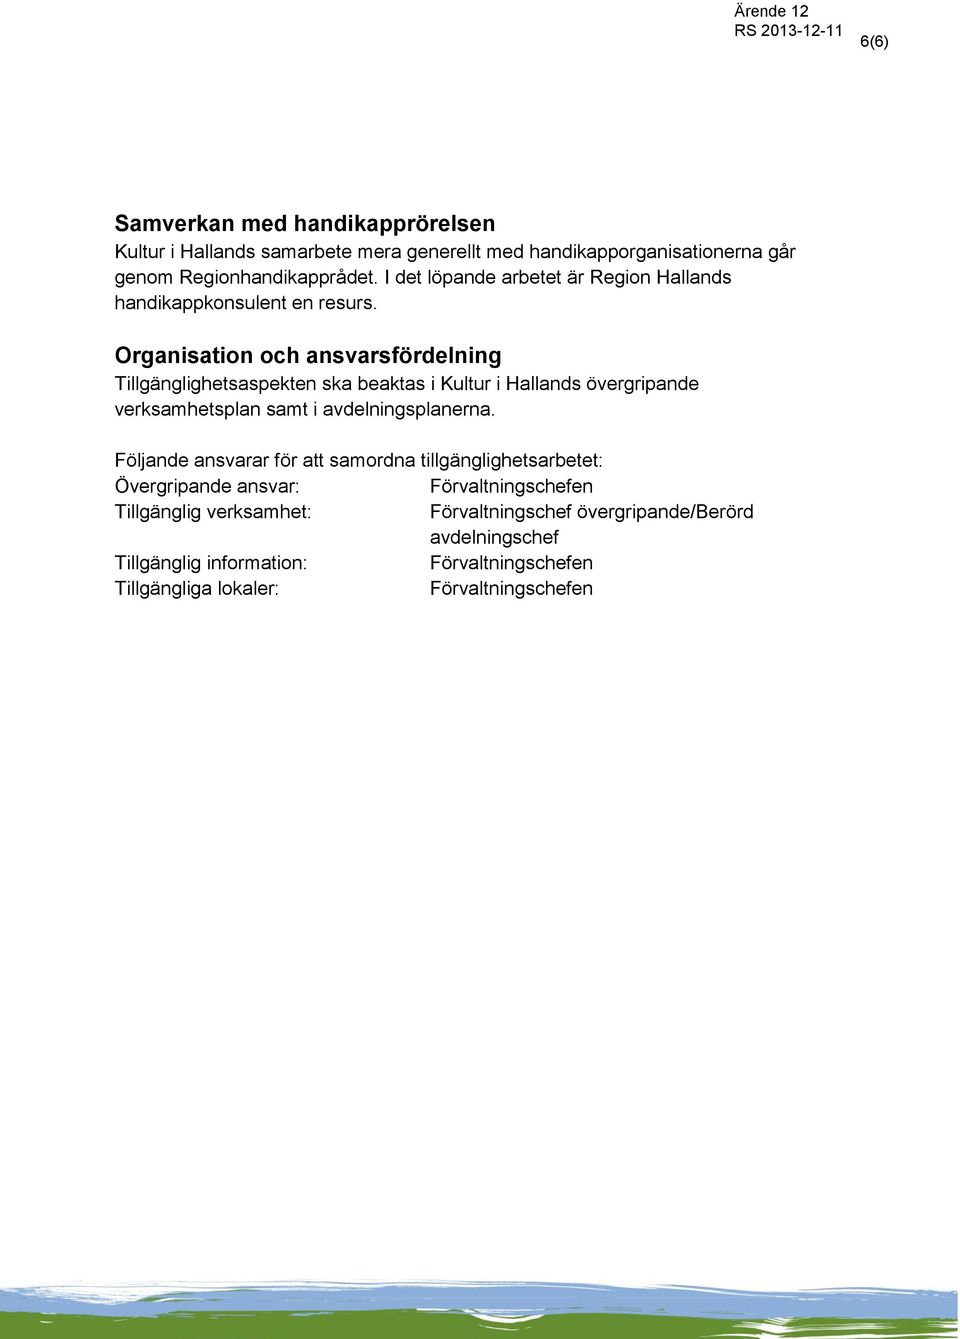 Organisation och ansvarsfördelning Tillgänglighetsaspekten ska beaktas i Kultur i Hallands övergripande verksamhetsplan samt i avdelningsplanerna.